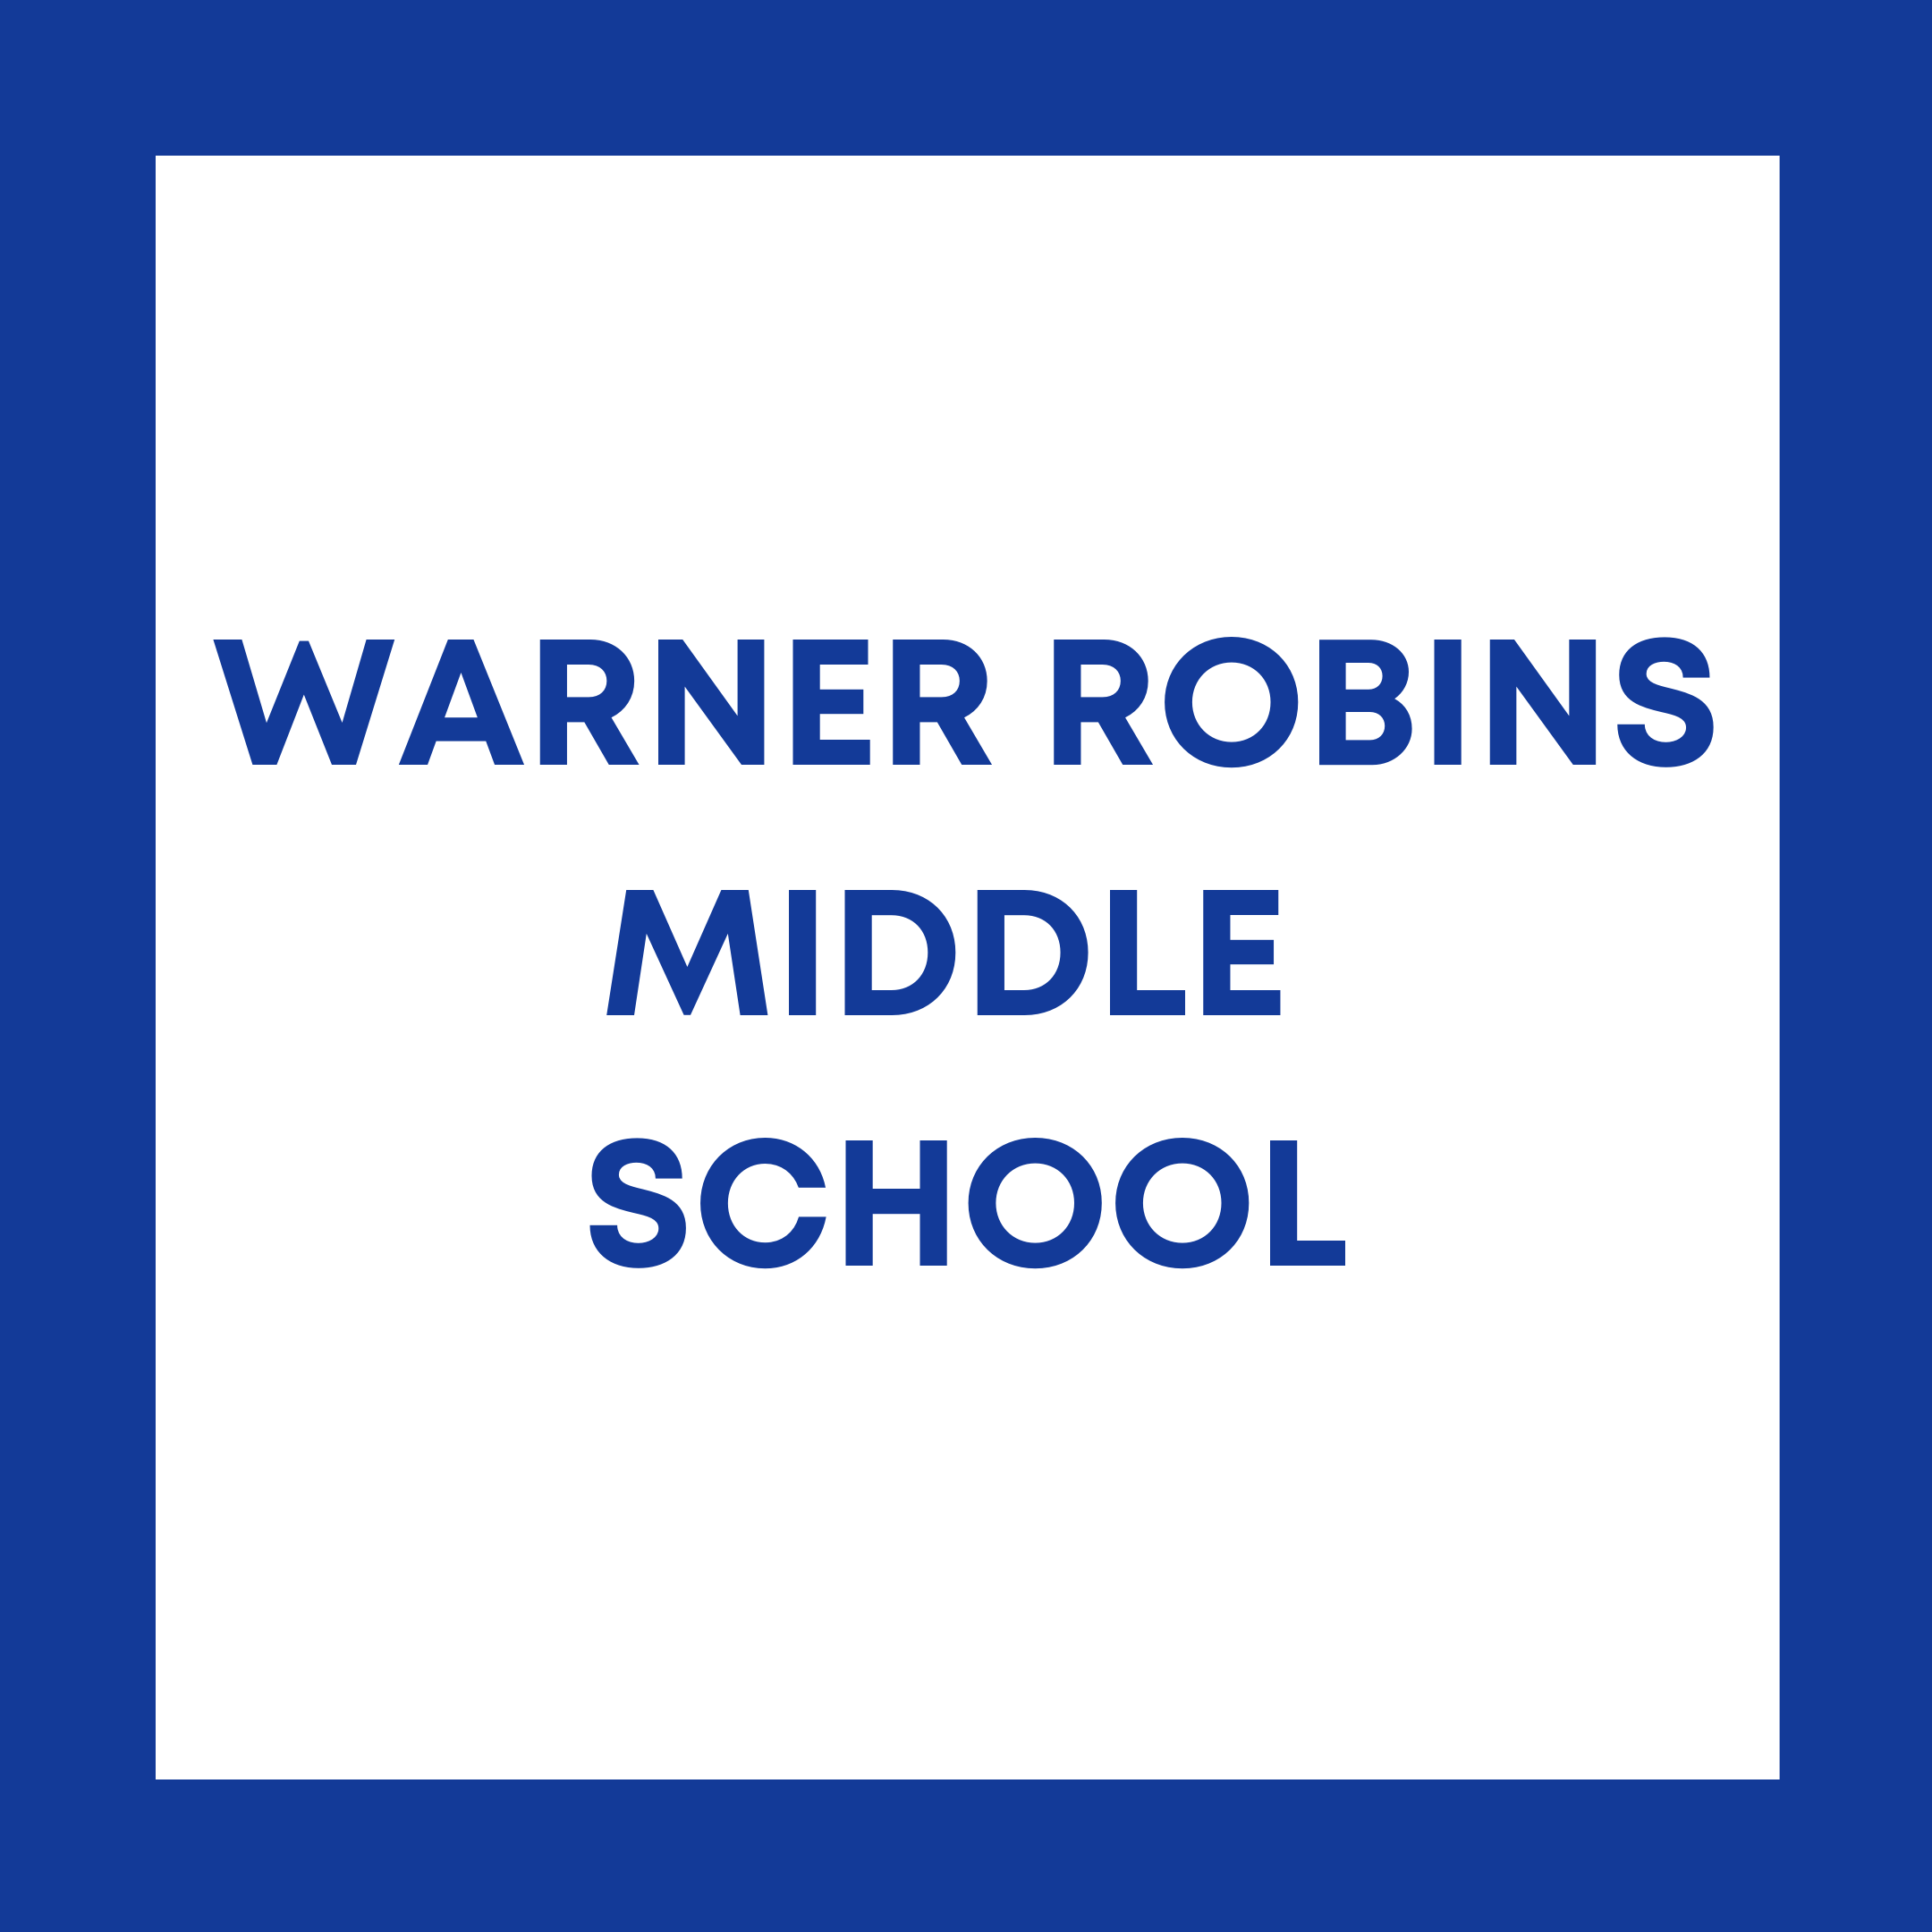 Warner Robins Middle